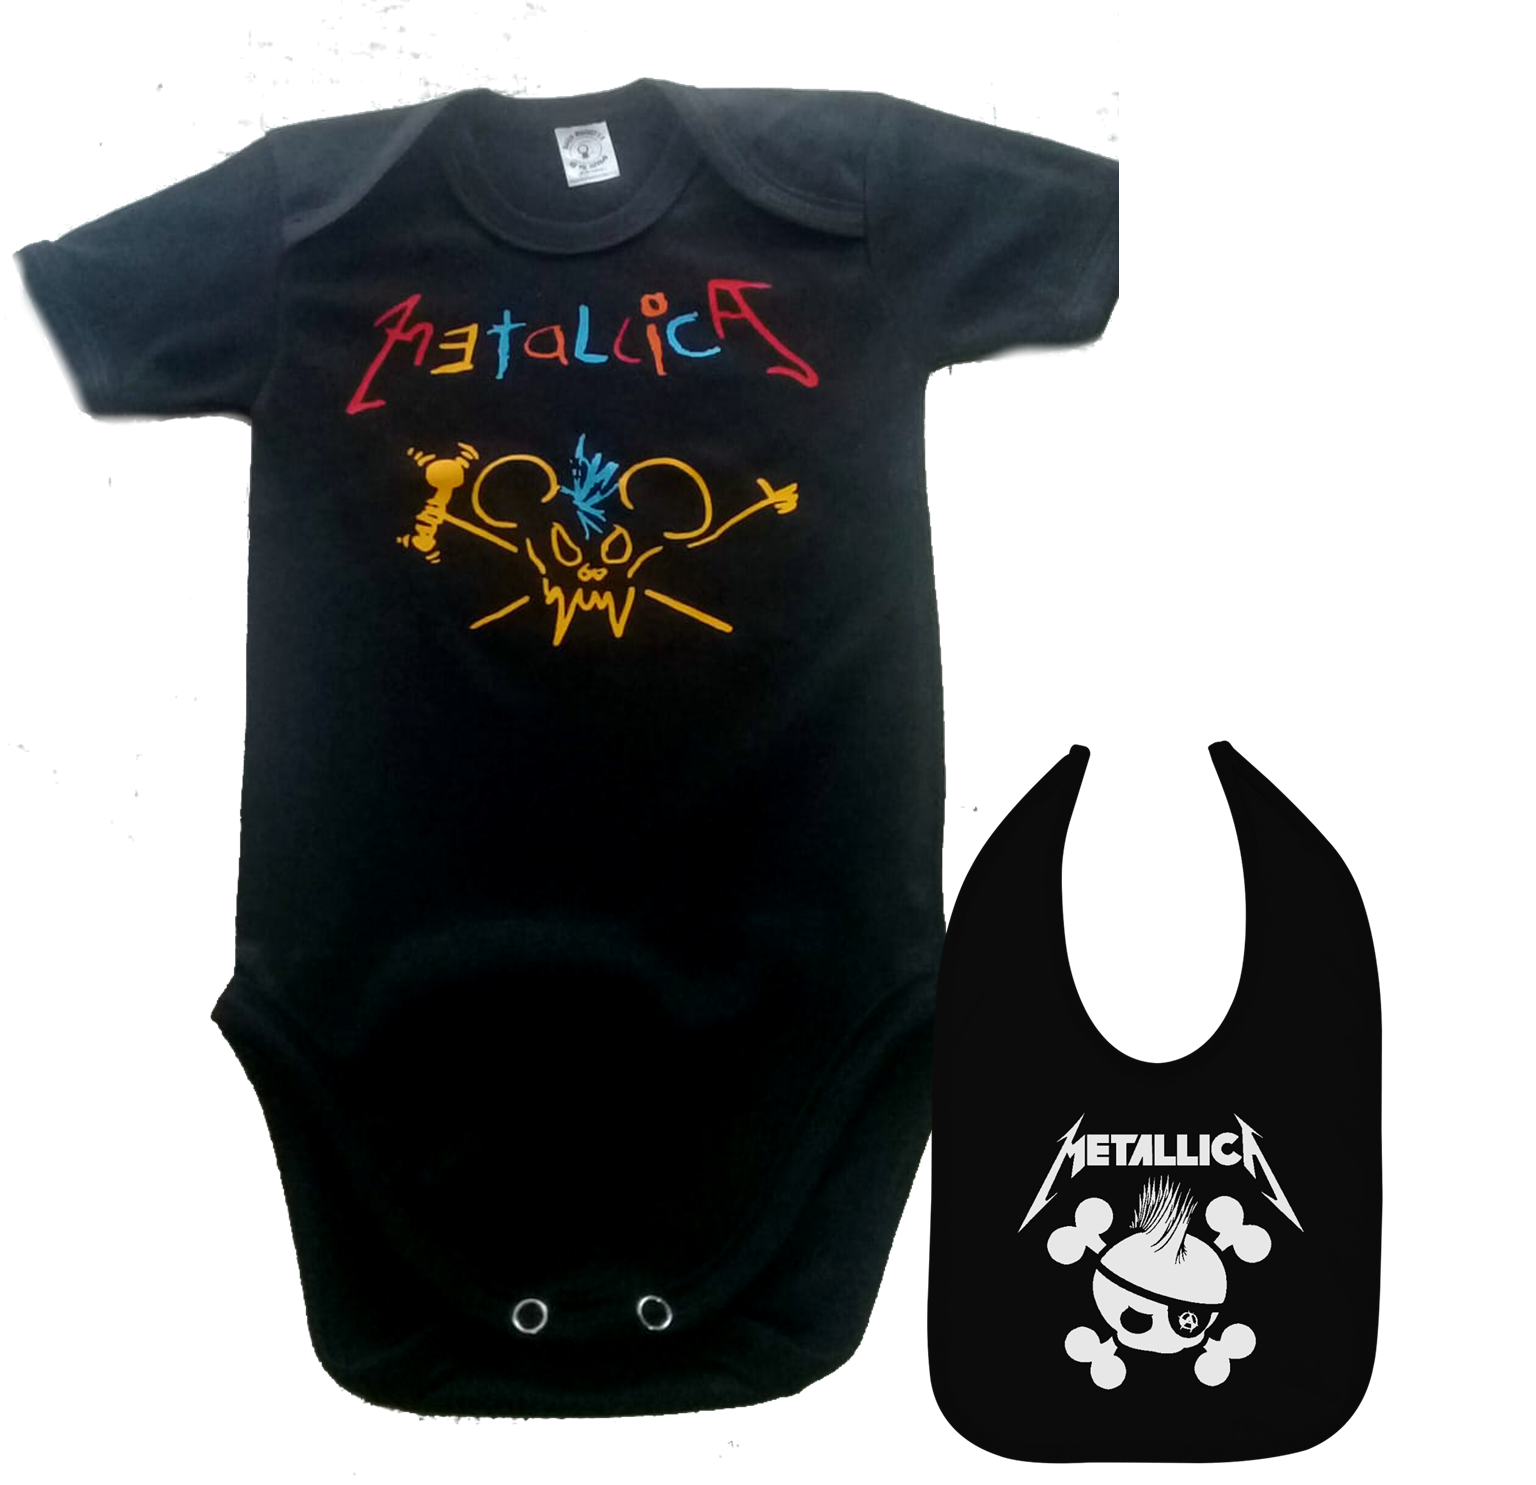 Empleado Debería Aleta set ropa para bebe rock metallica crayola - Baby monster​​​